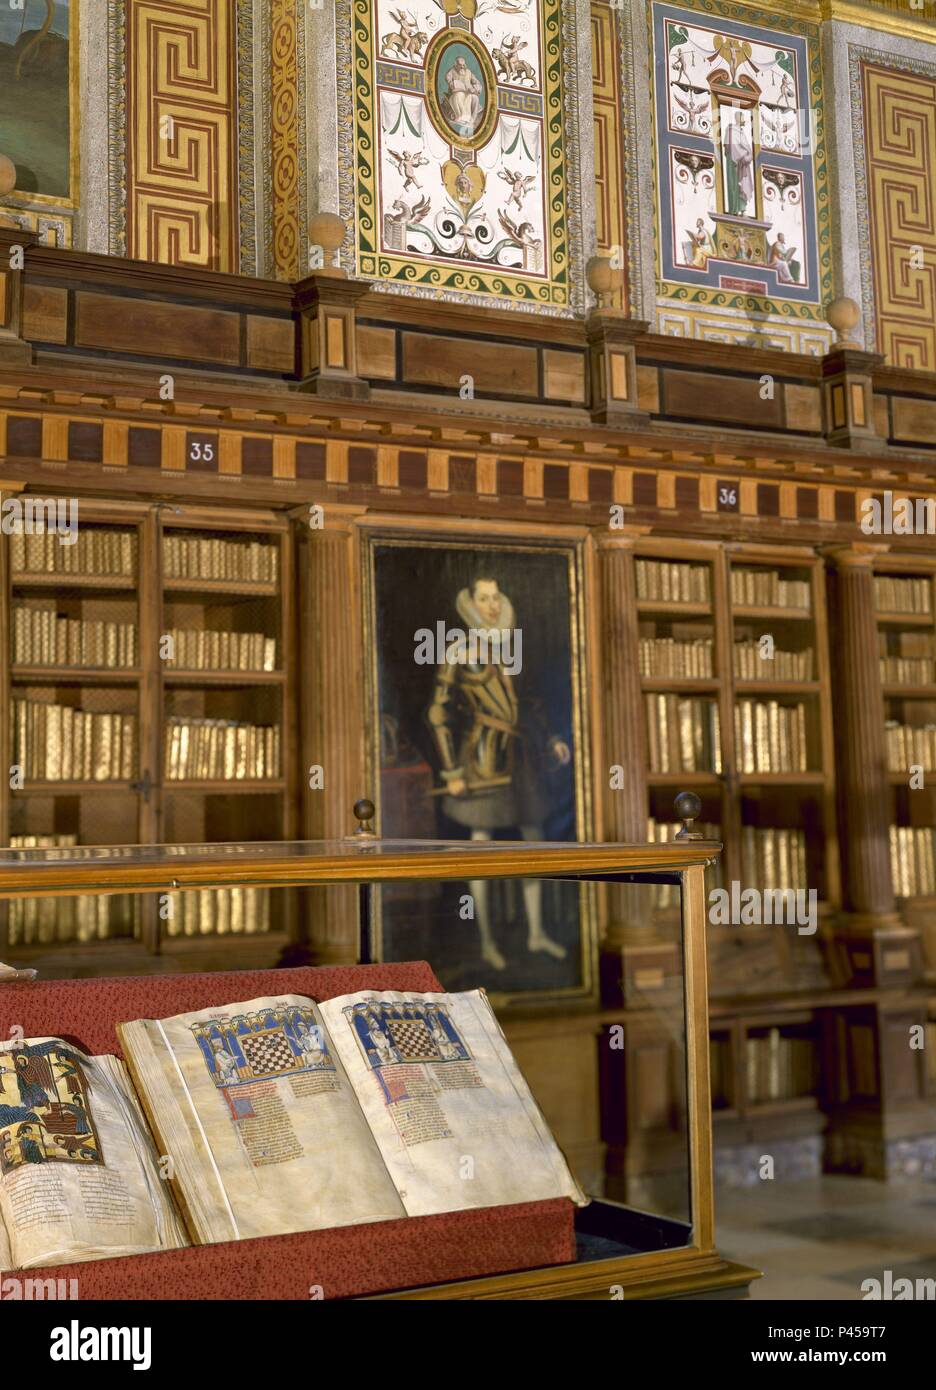 EXPUESTO LIBRO DE JUEGOS EN SU VITRINA. Autor: Alfons X. von Kastilien, der Weise (1221-1284). Lage: MONASTERIO - BIBLIOTECA - EDIFICIO, SAN LORENZO DEL Escorial, Madrid, Spanien. Stockfoto